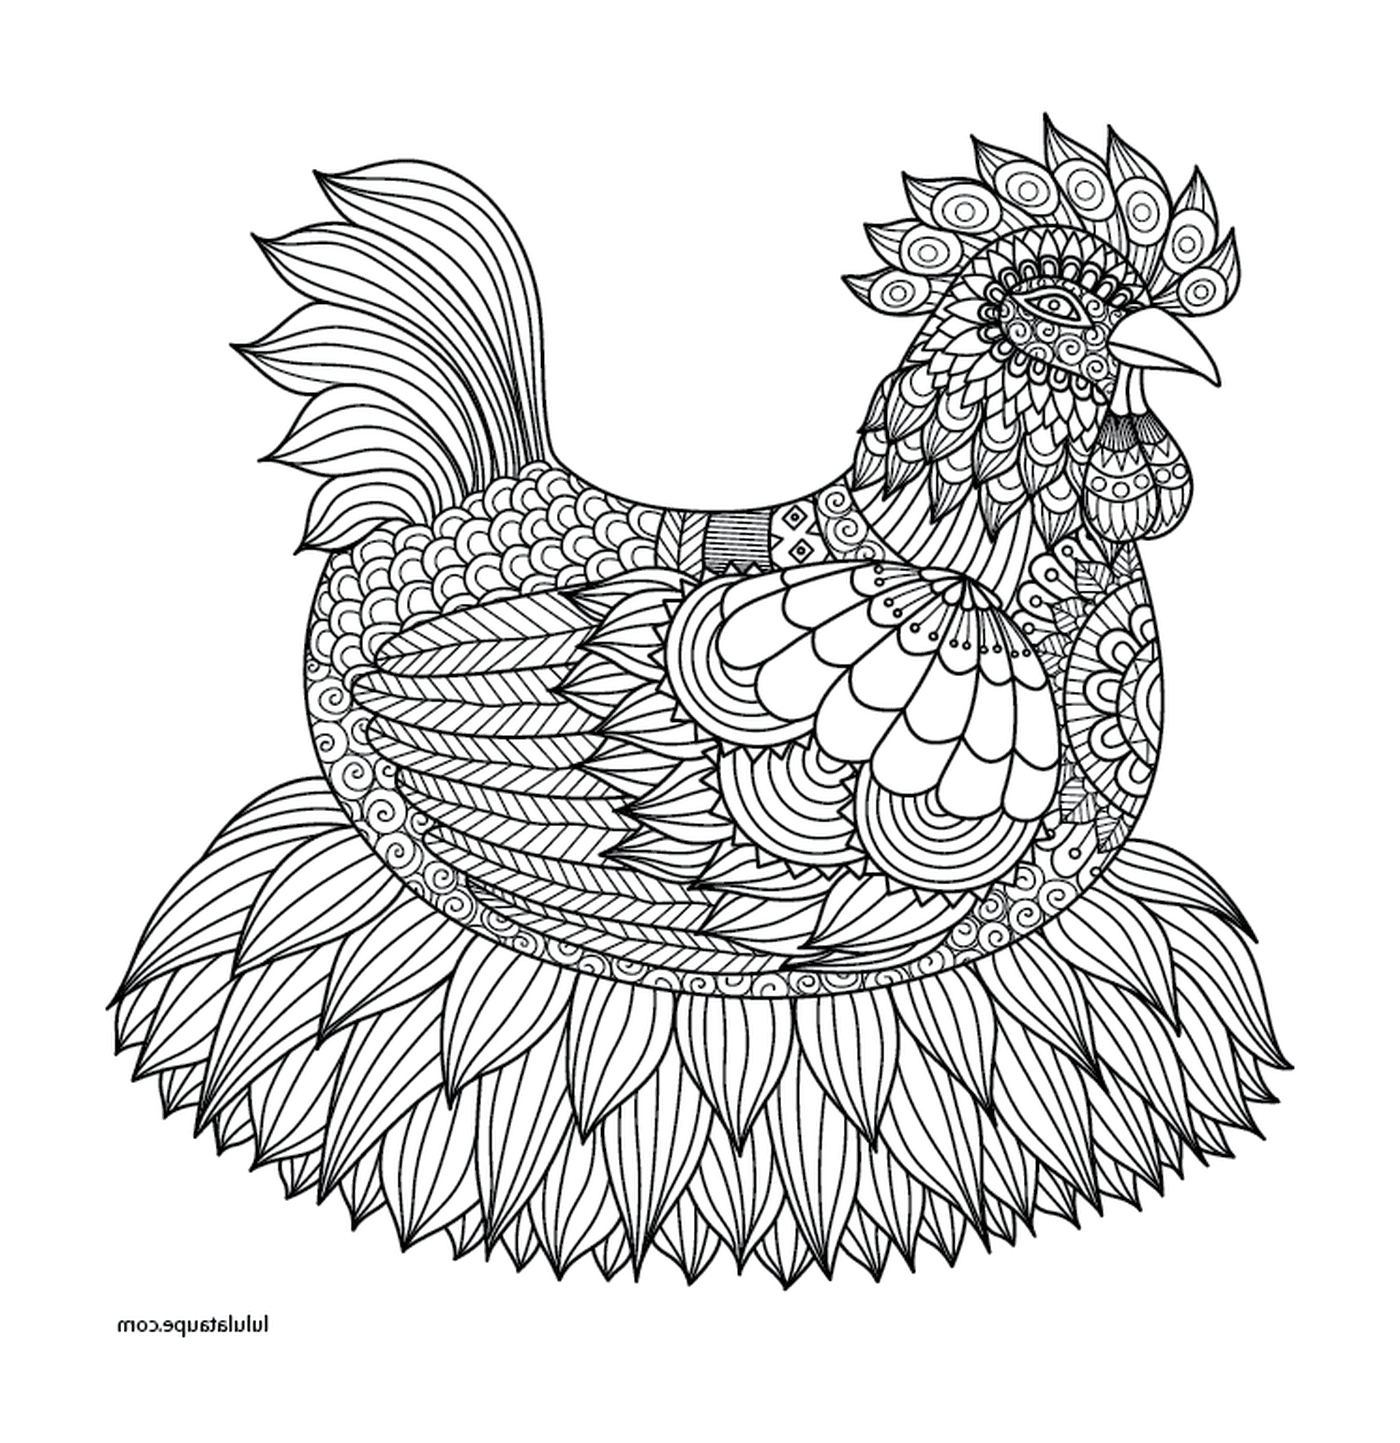  Elegantly designed adult chicken 